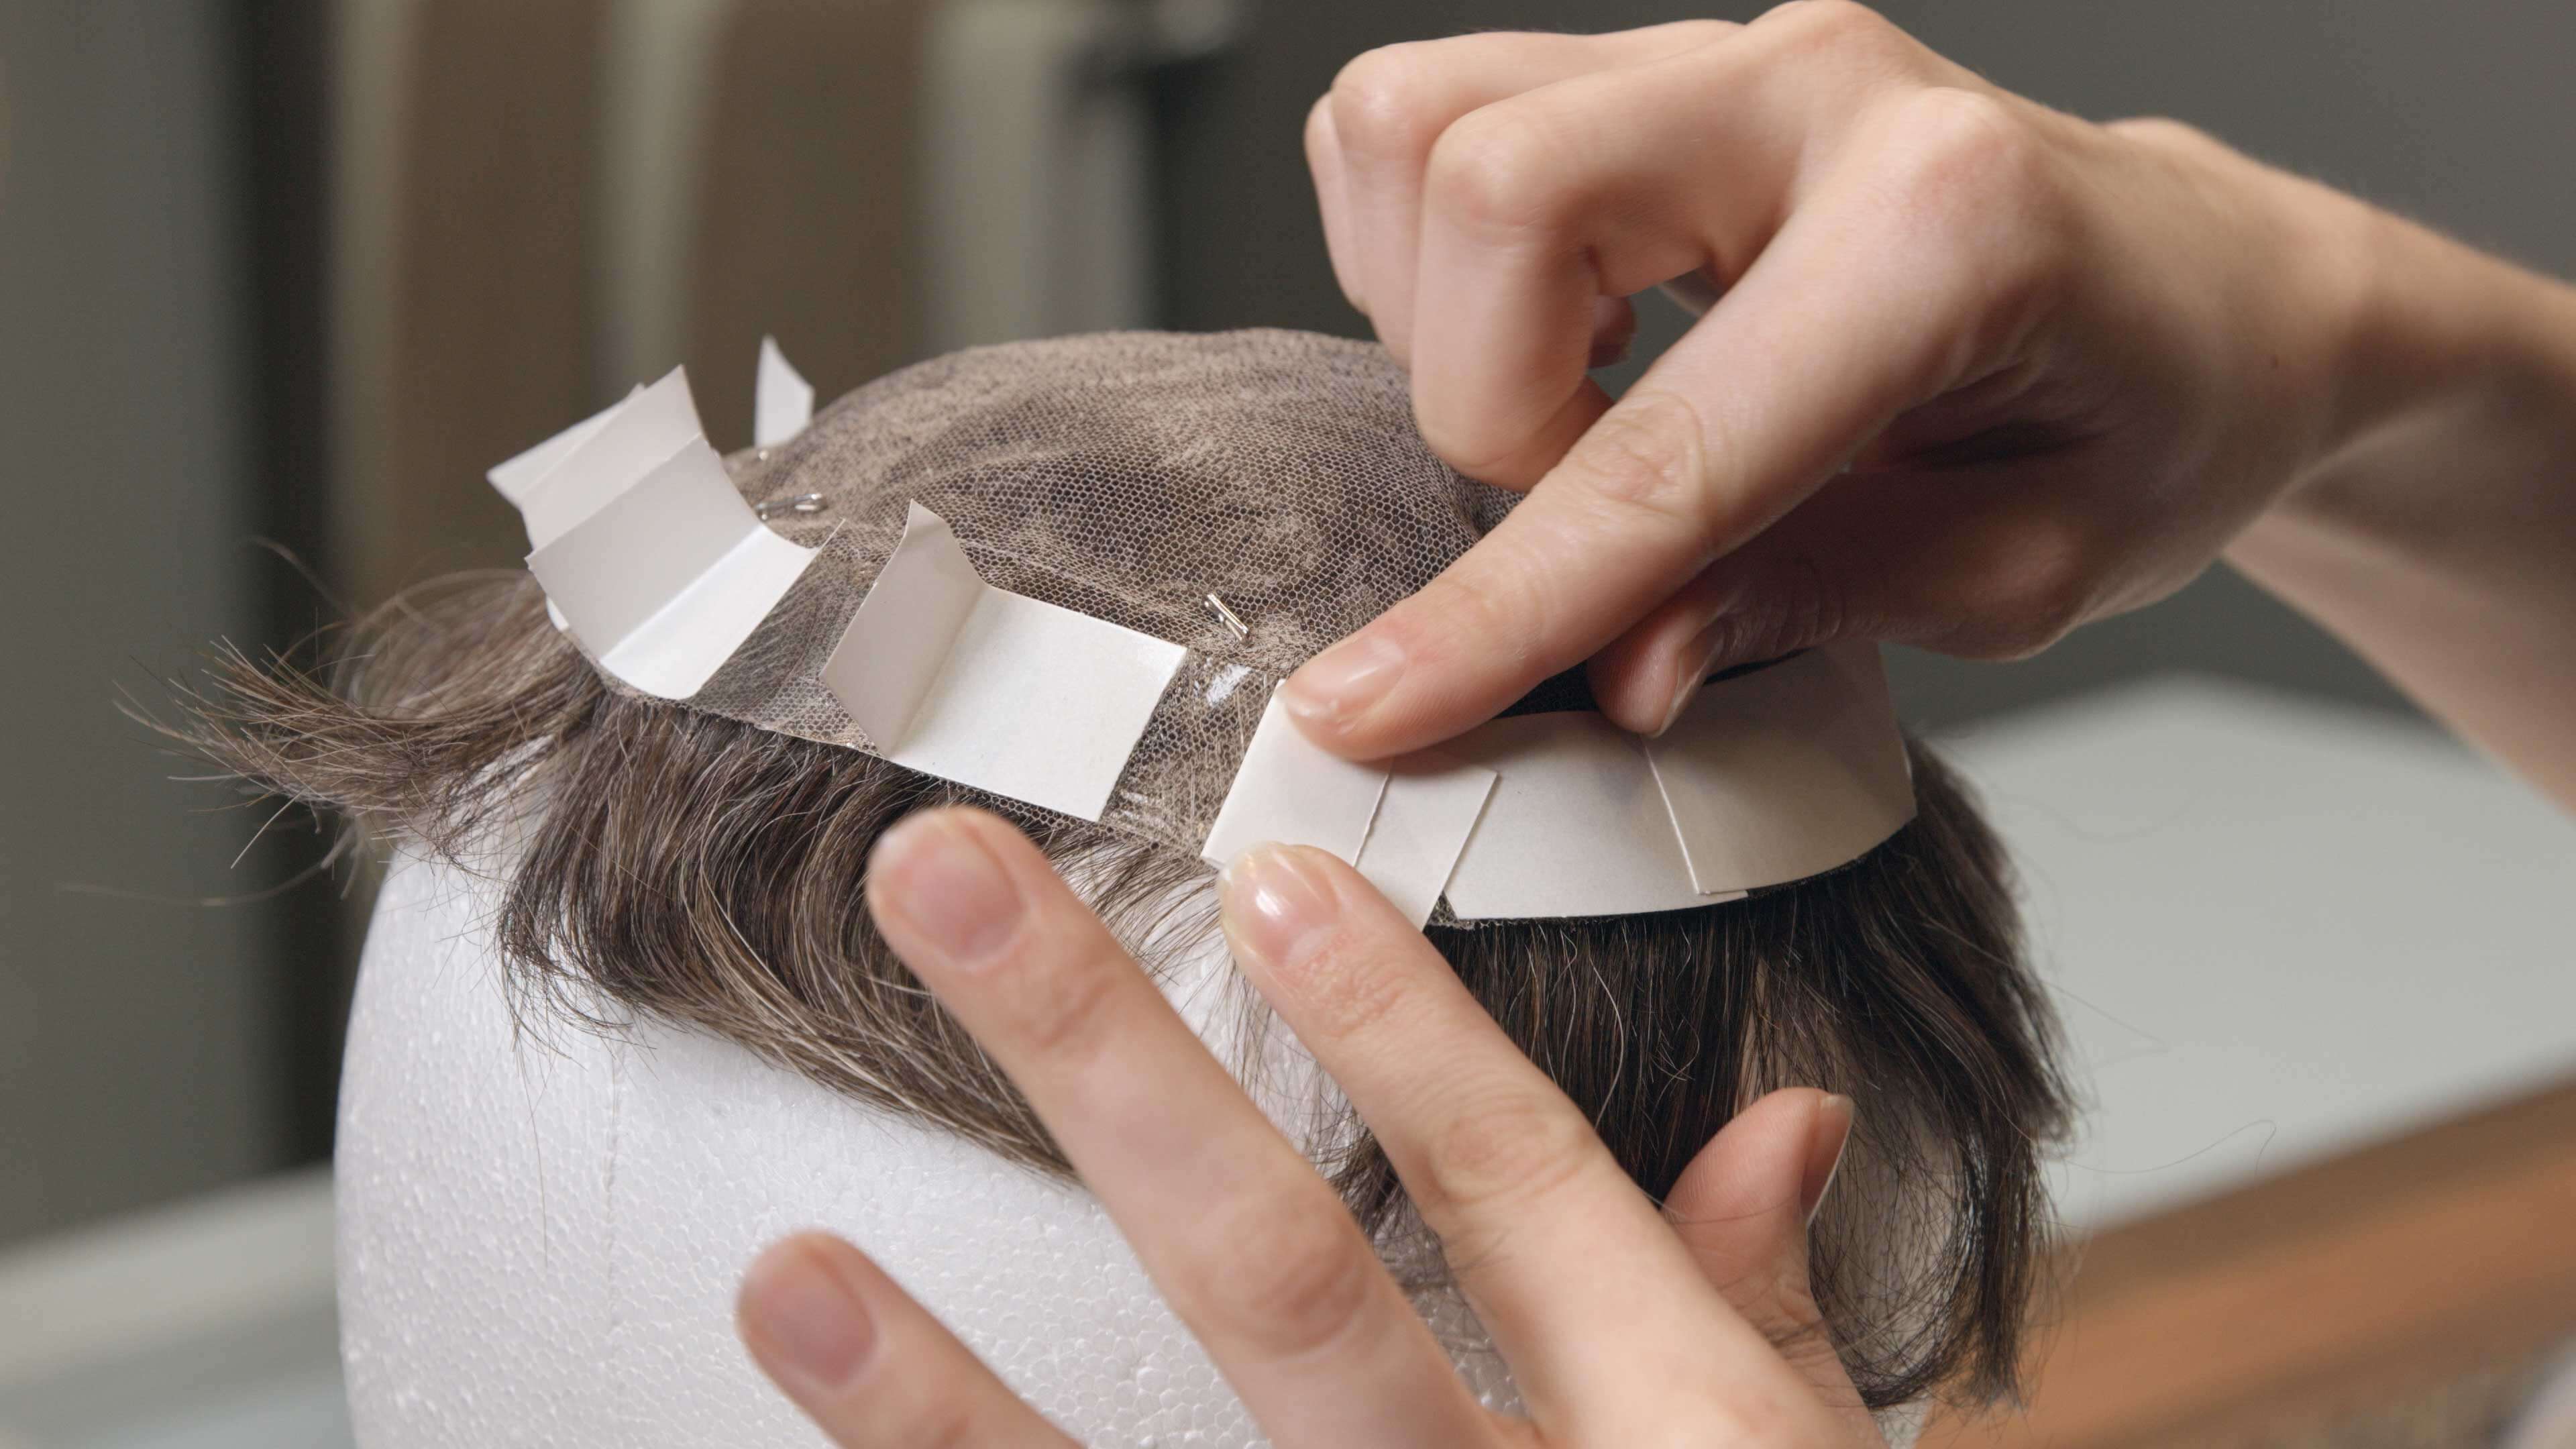 Protez Saç Bantları Temzileme 3. Adım | Protez Saçlar nasıl temizlenir?